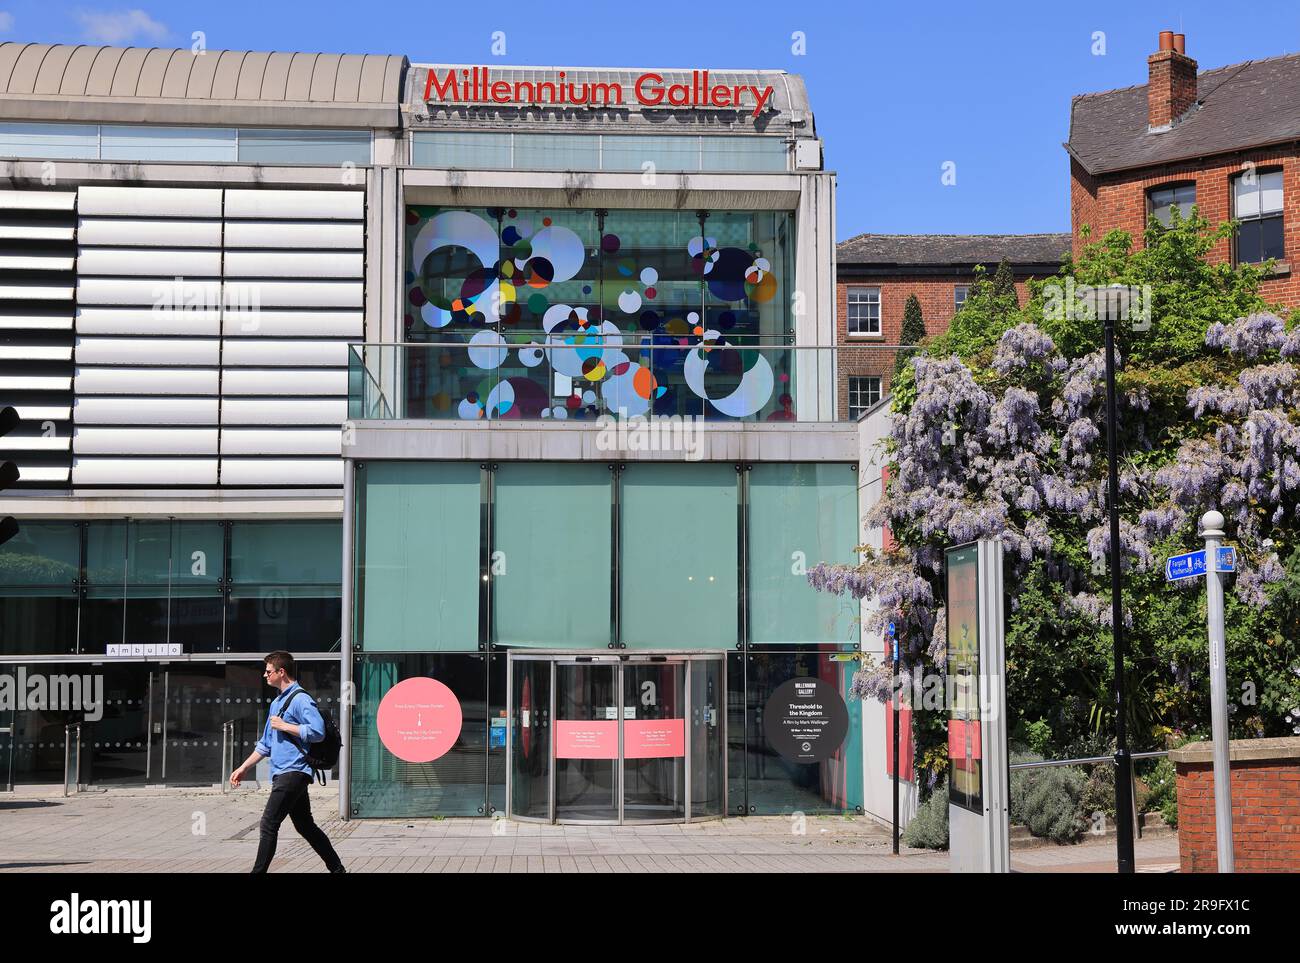 Les Millennium Galleries, galeries d'art et musées dans le centre de Sheffield, South Yorkshire, Royaume-Uni Banque D'Images